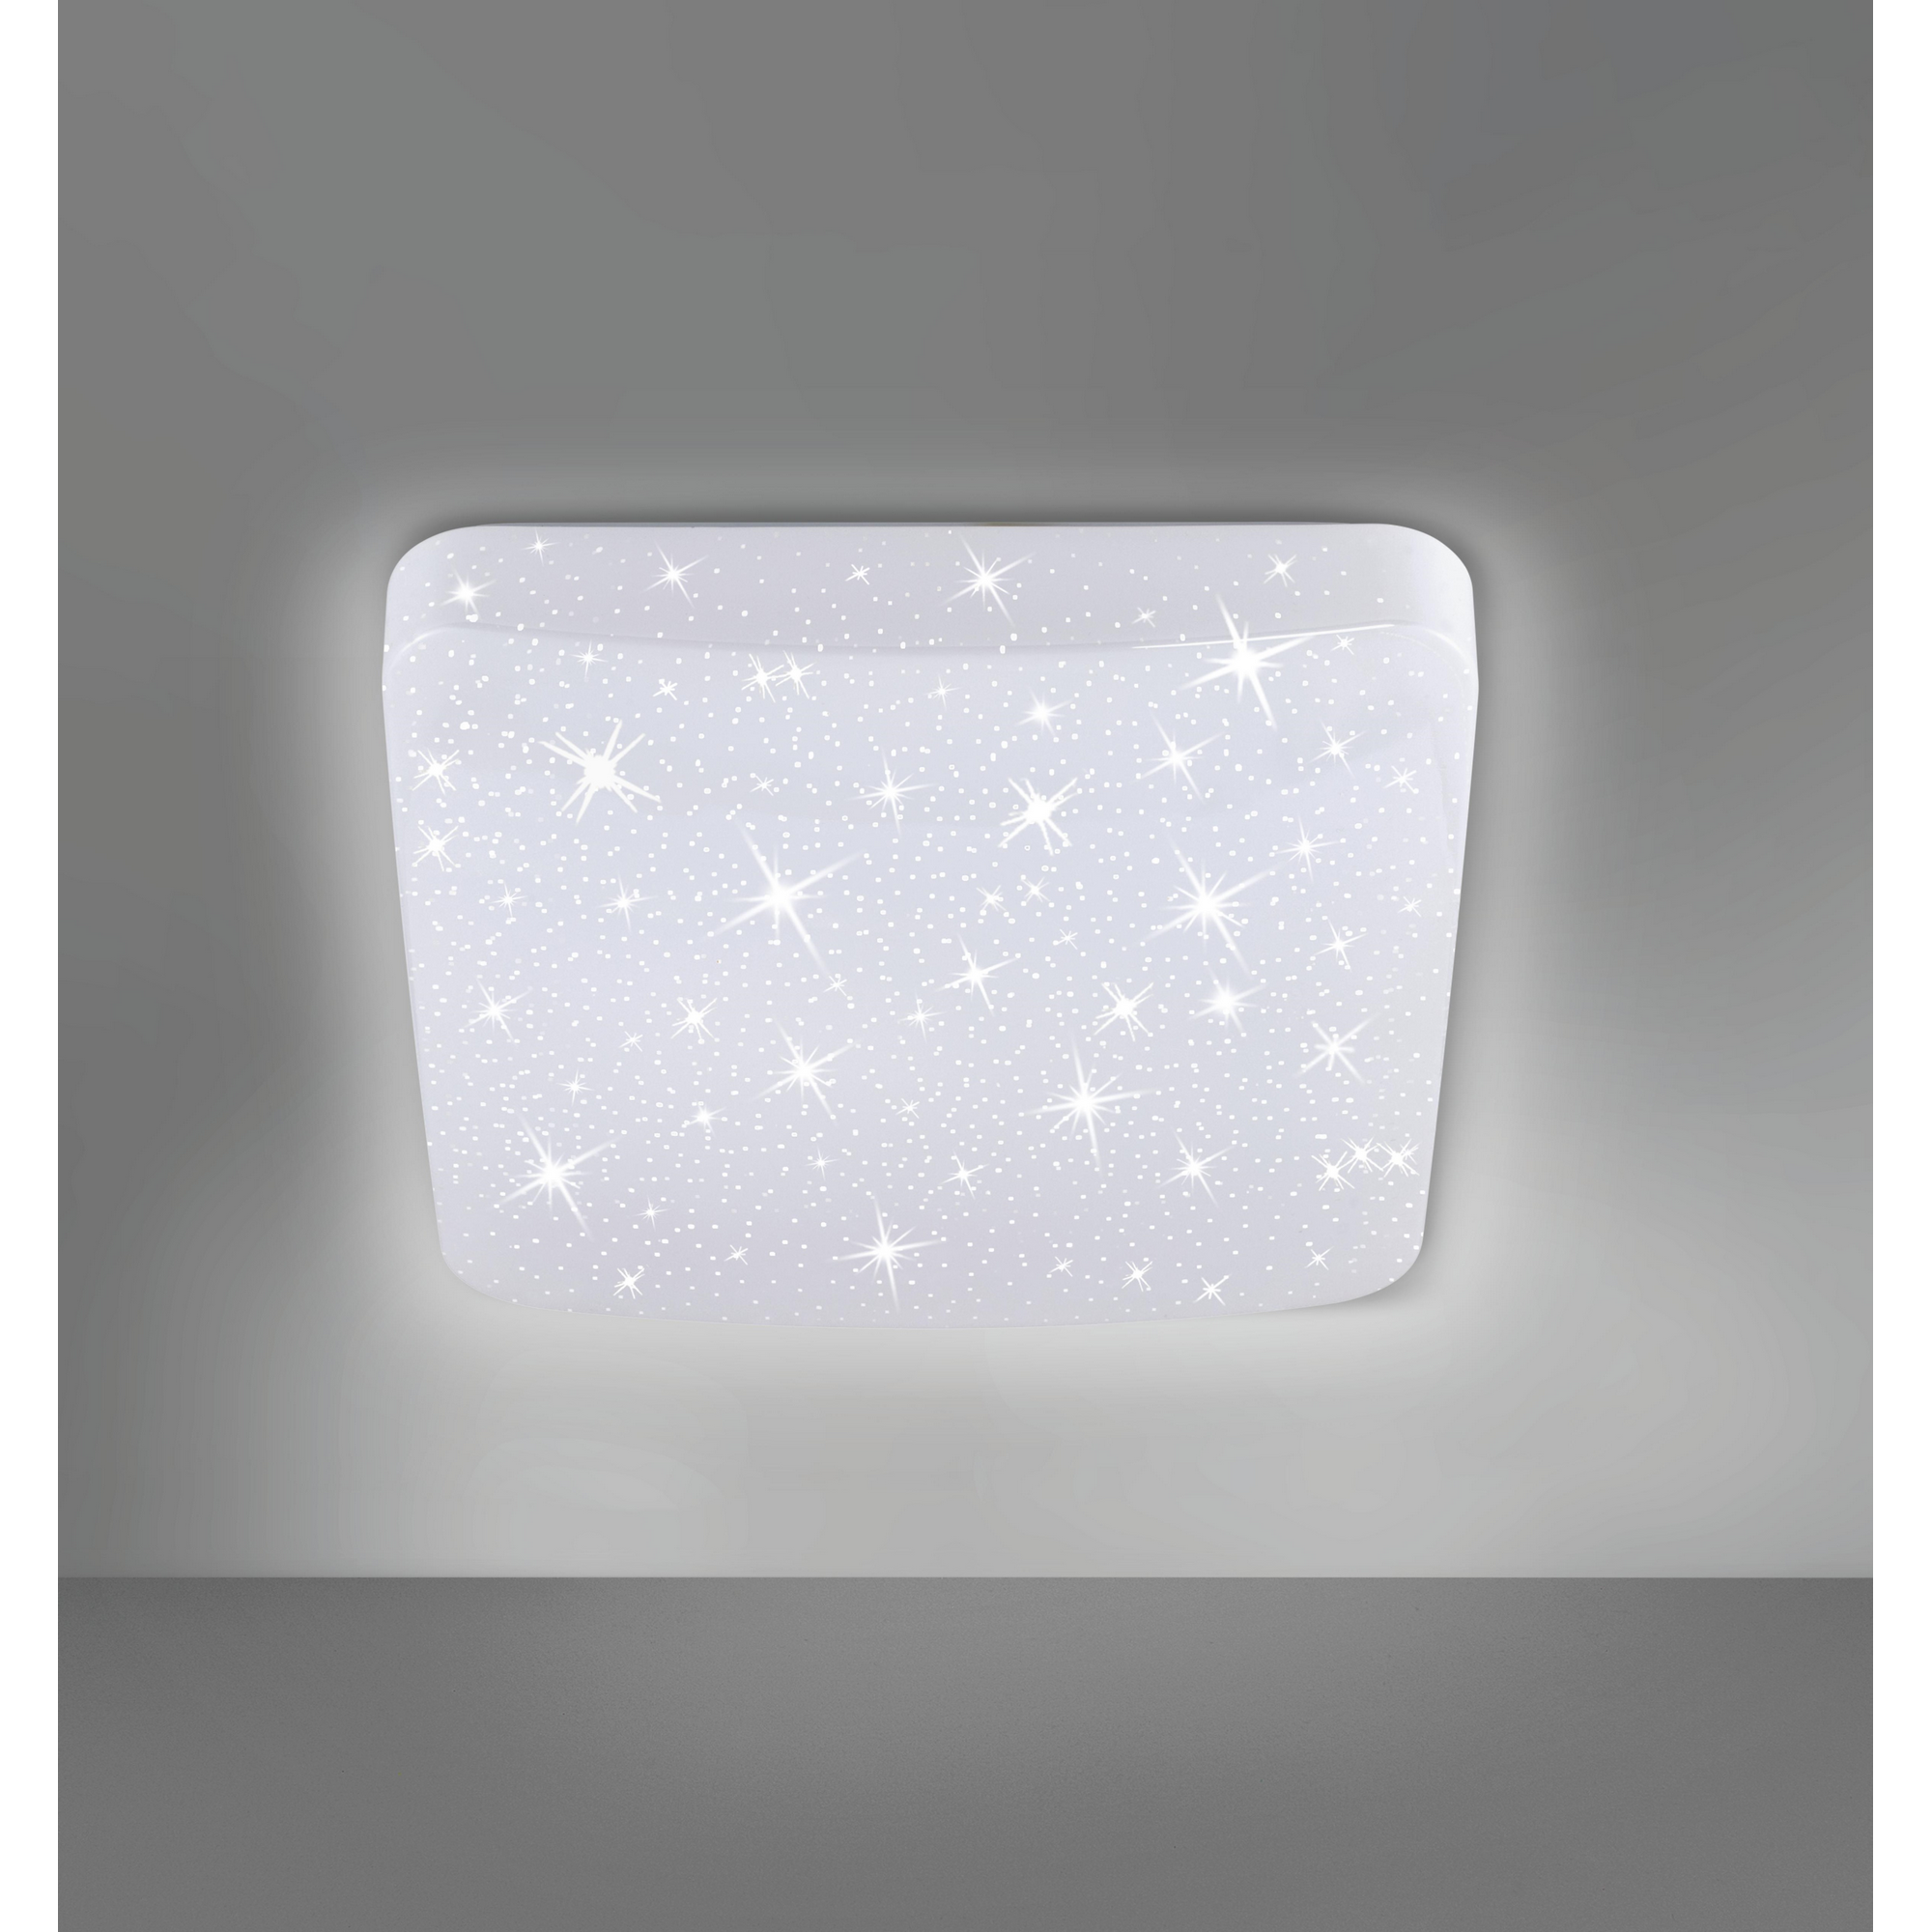 LED-Deckenleuchte 'Sterneffekt' weiß 27,8 x 27,8 cm 12 W 1300 lm + product picture